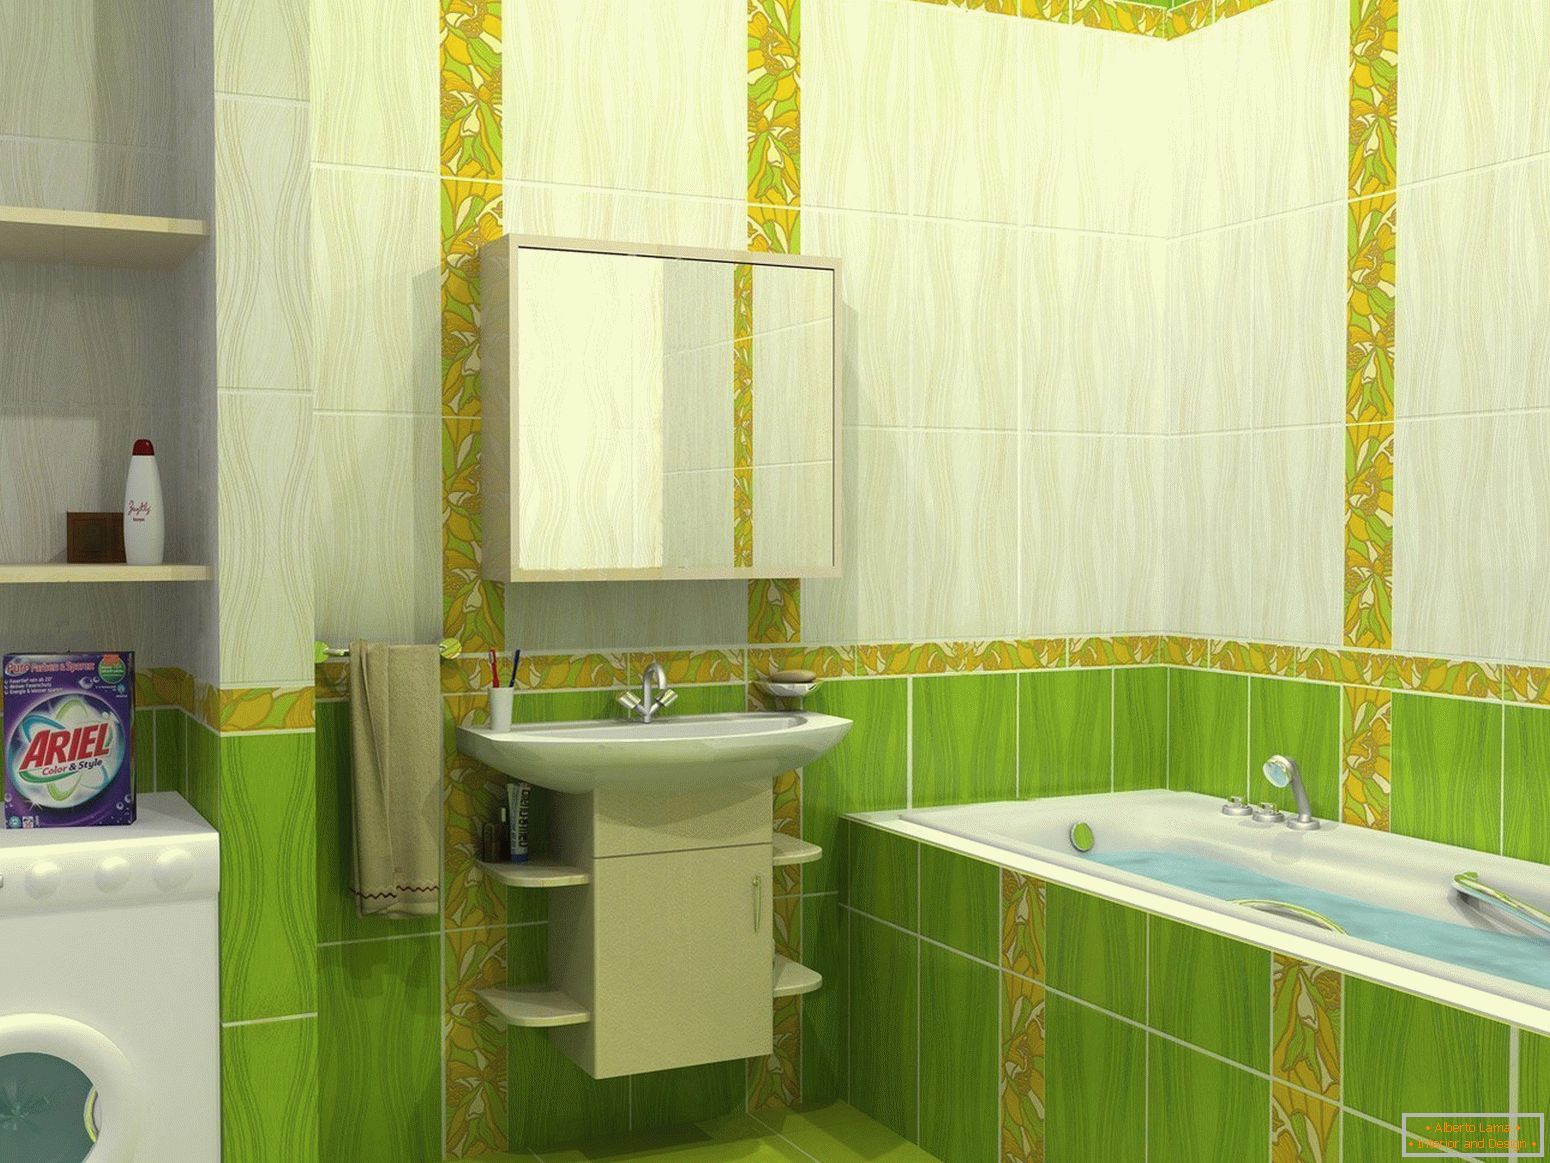 Návrh kúpeľne v zelených tónoch